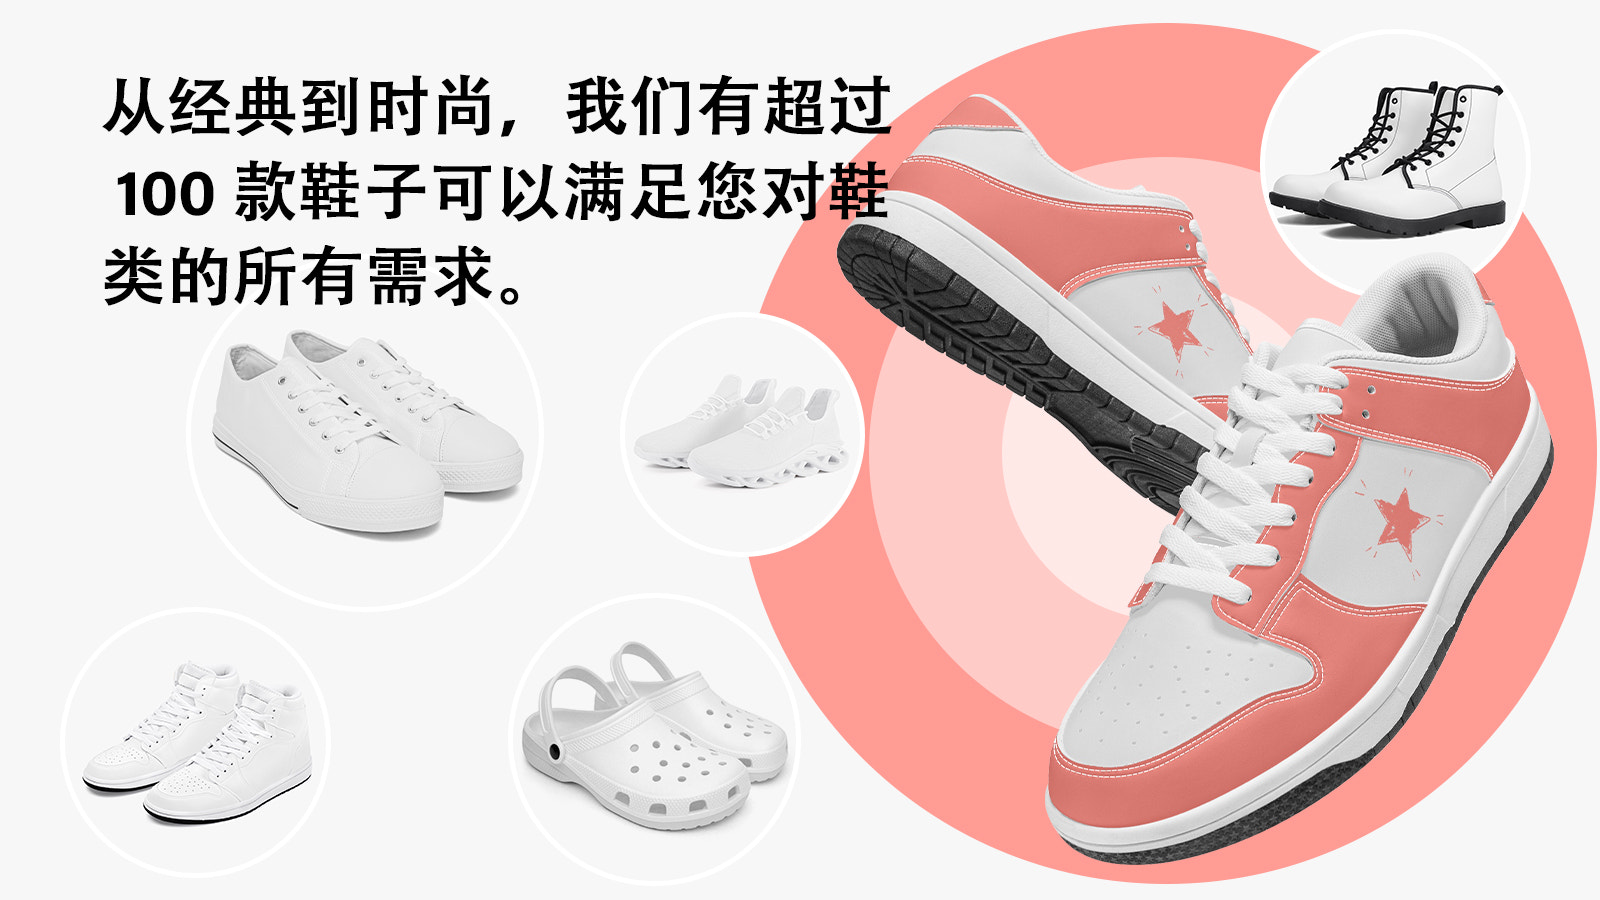 100+ 定制设计的按需打印鞋、运动鞋和靴子。